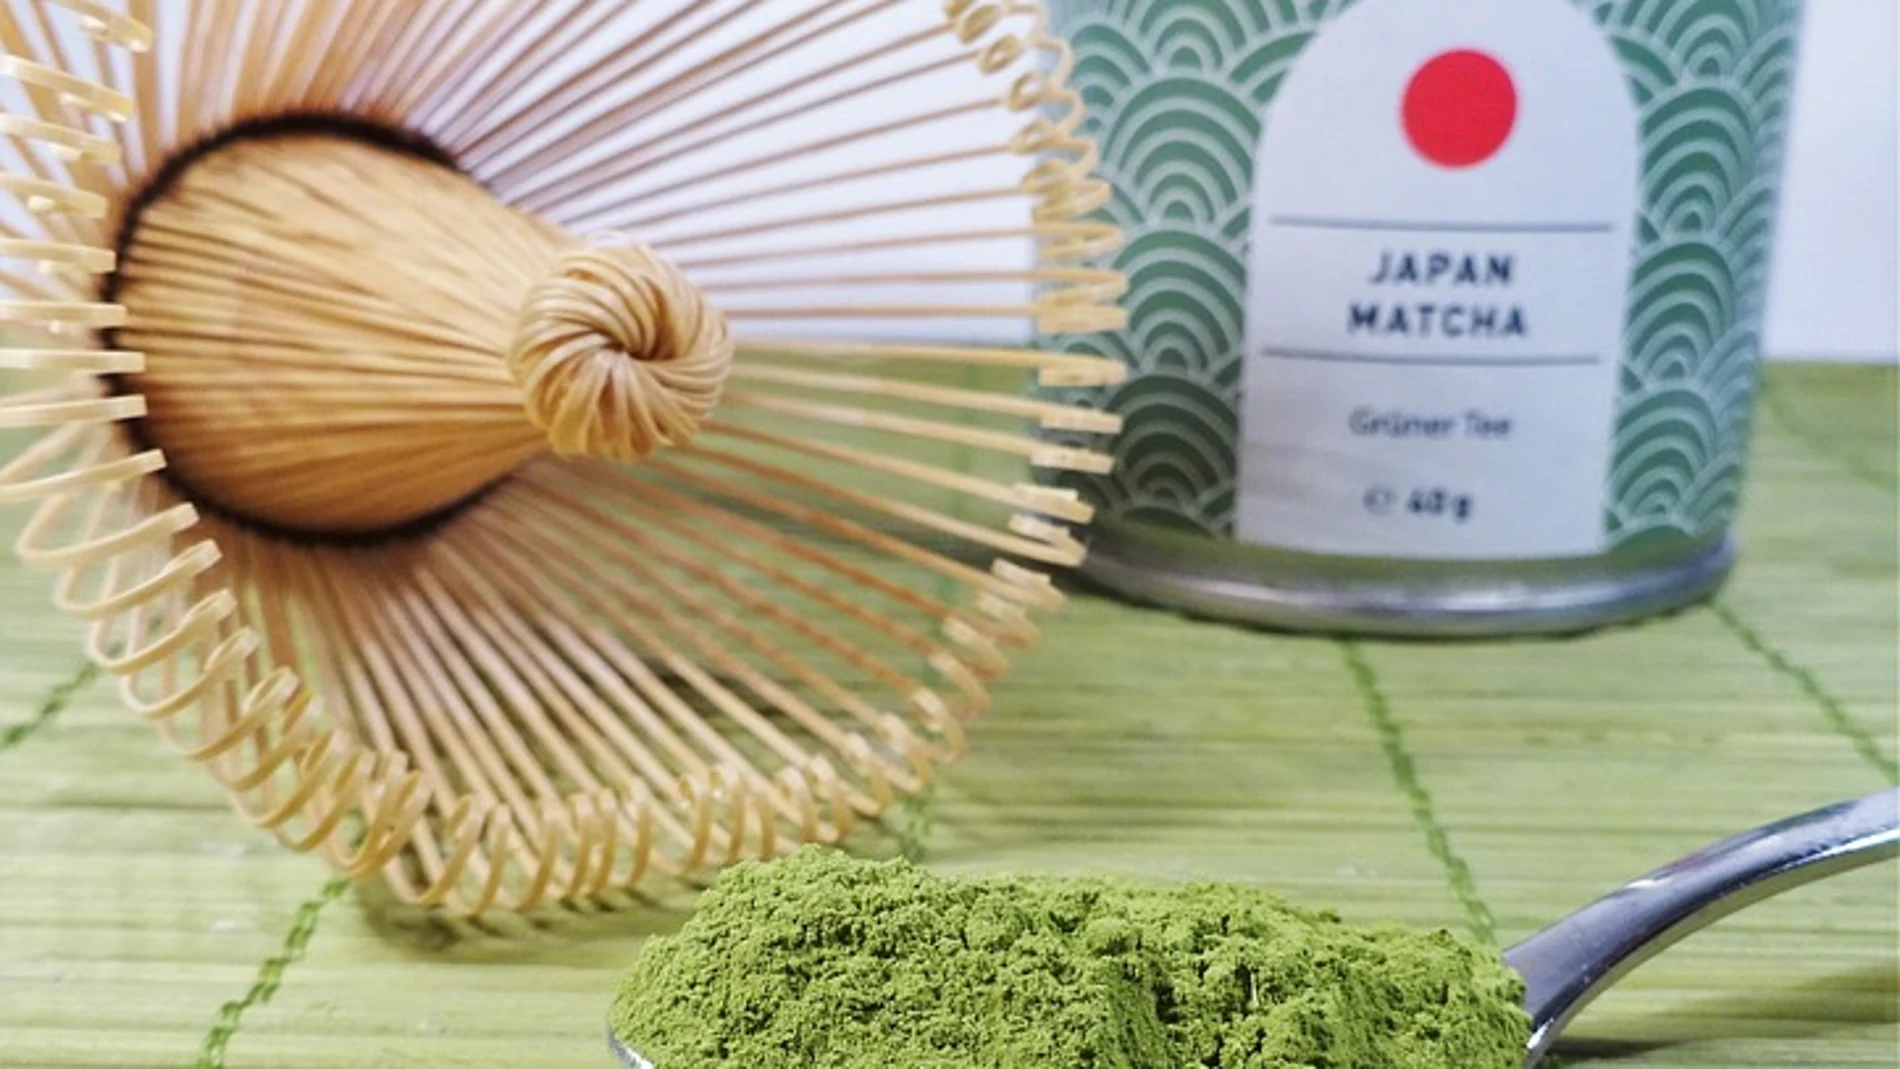 El té matcha es una de las variedades que más han crecido en el mercado de estas infusiones gracias a sus múltiples beneficios, entre los que destaca su aportación para fortalecer el sistema inmunológico.